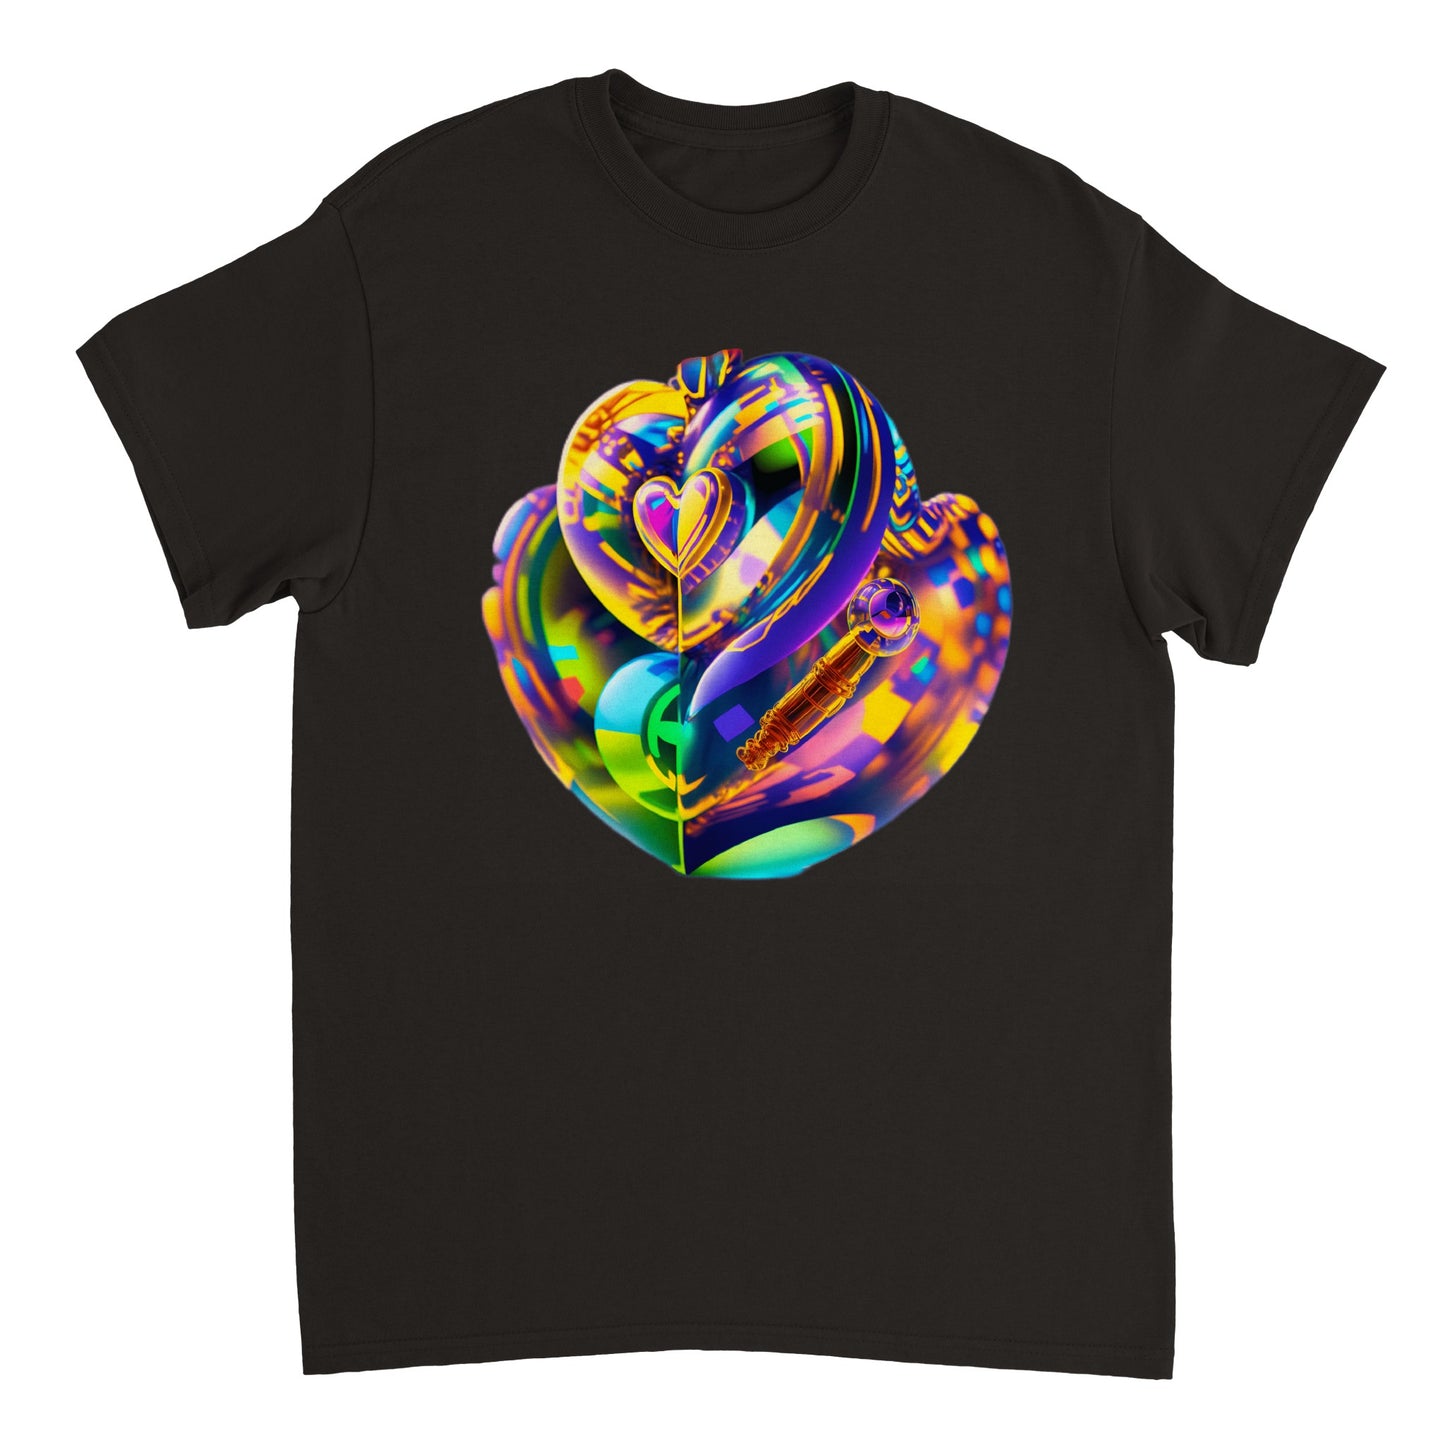 Love Heart - Heavyweight Unisex Crewneck T-shirt 18